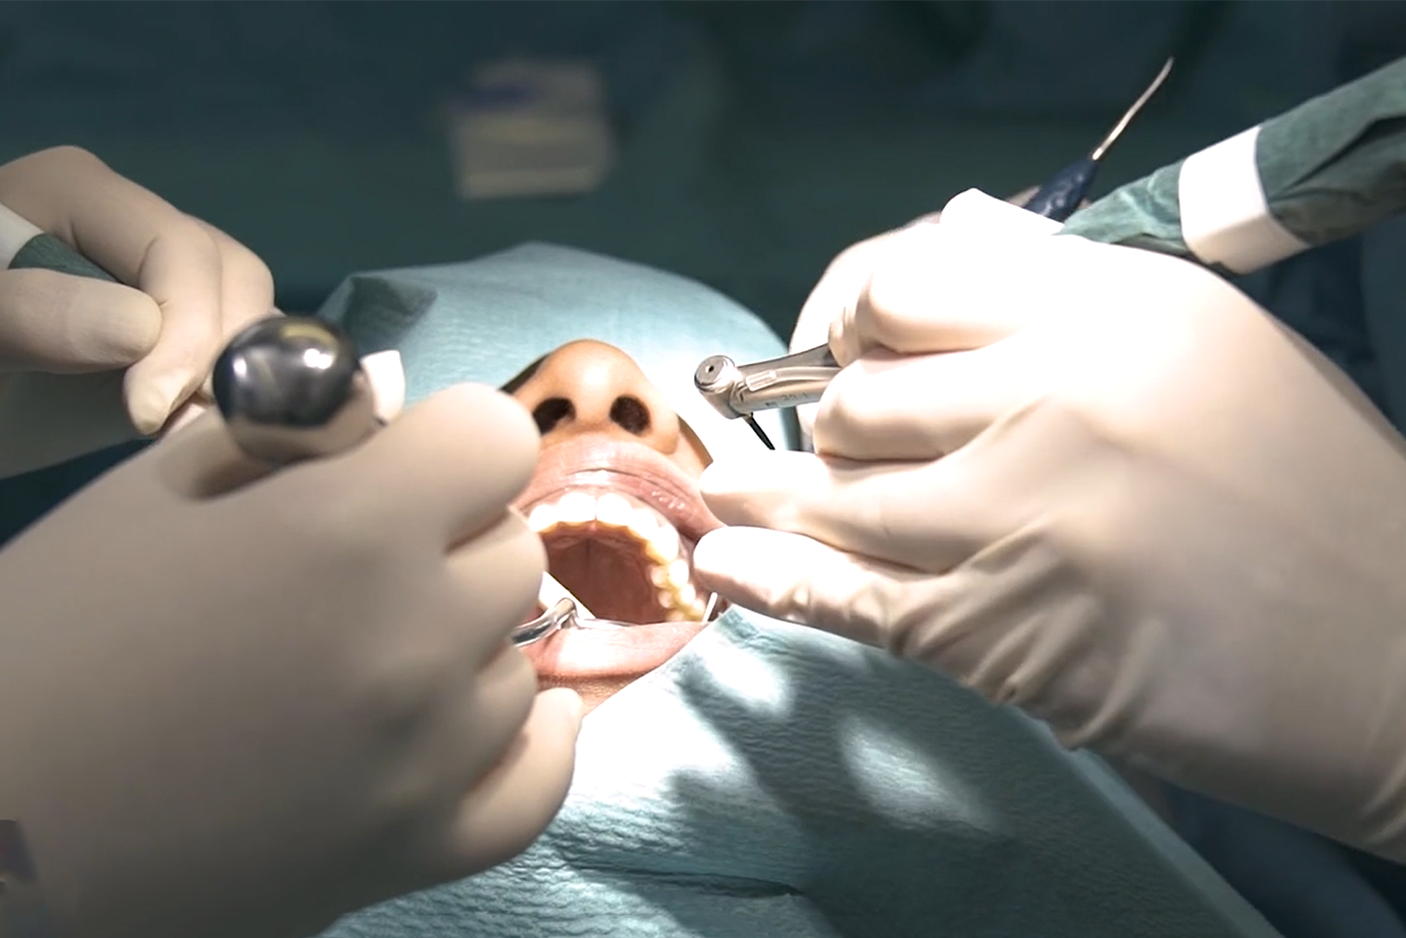 Implantologie 2 – Chirurgie: vom einfachen zum komplexen Fall, Hygiene und steriles Arbeiten